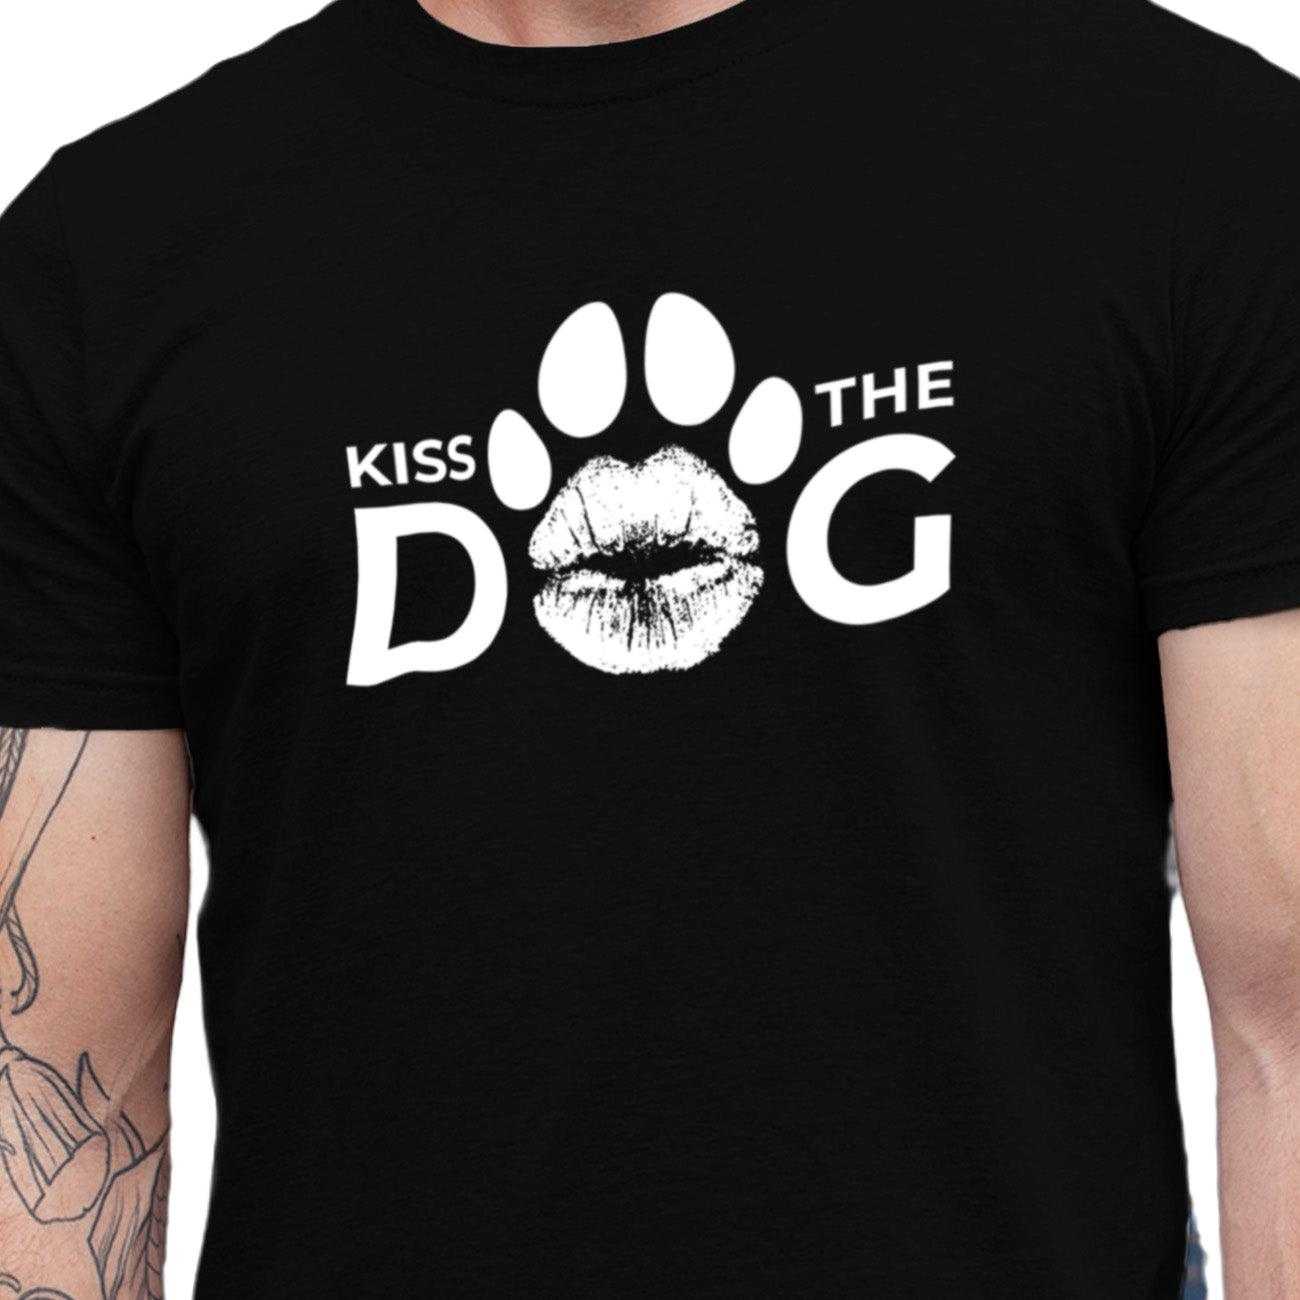 T-Shirt - "Kiss the Dog" Kussmund "O" ohne Kralle